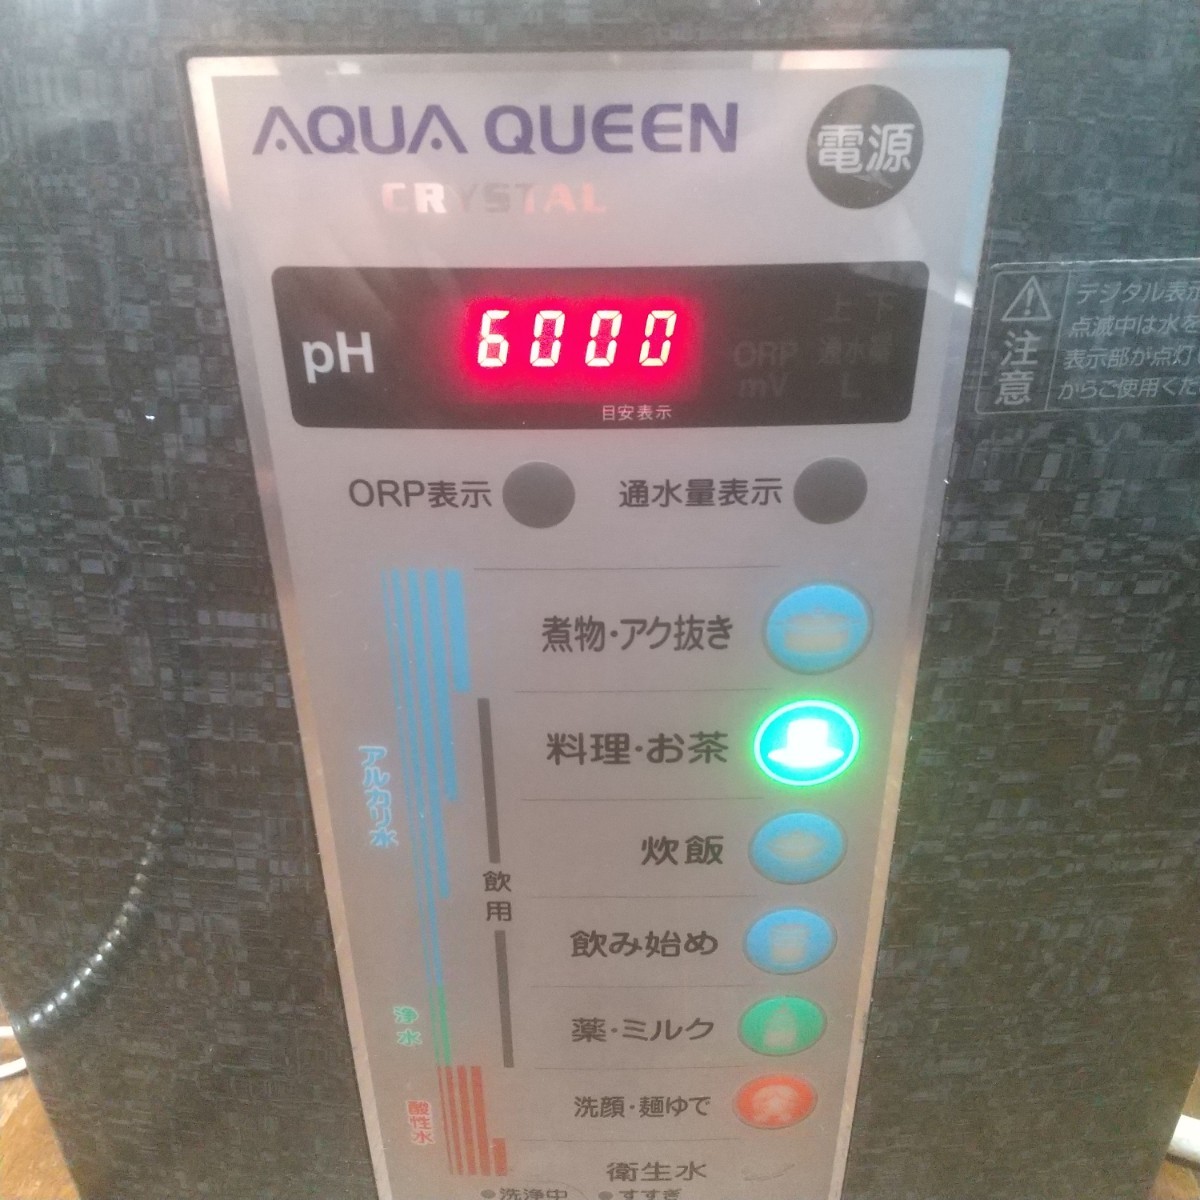 トレビ Trevi Aqua Queen Crystal FW-207 アルカリイオン整水器 式電解水_画像3